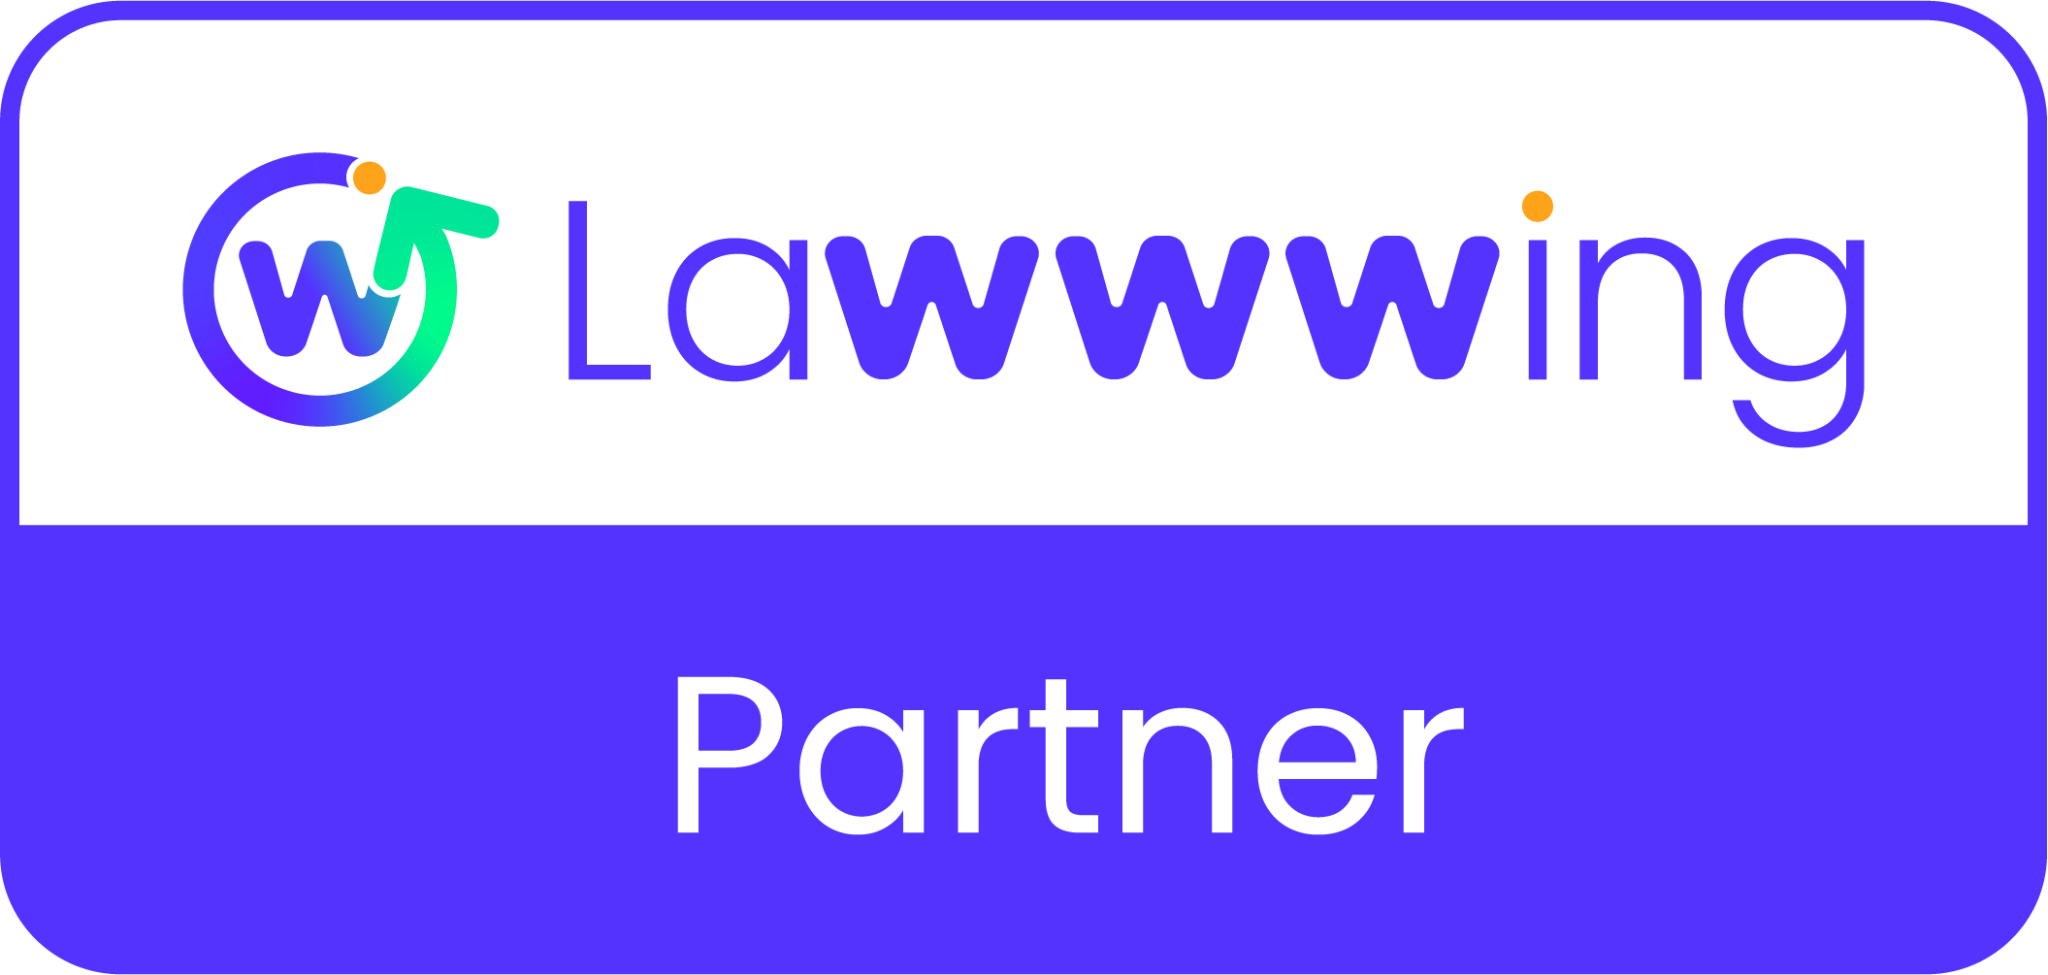 lawwing partners logo